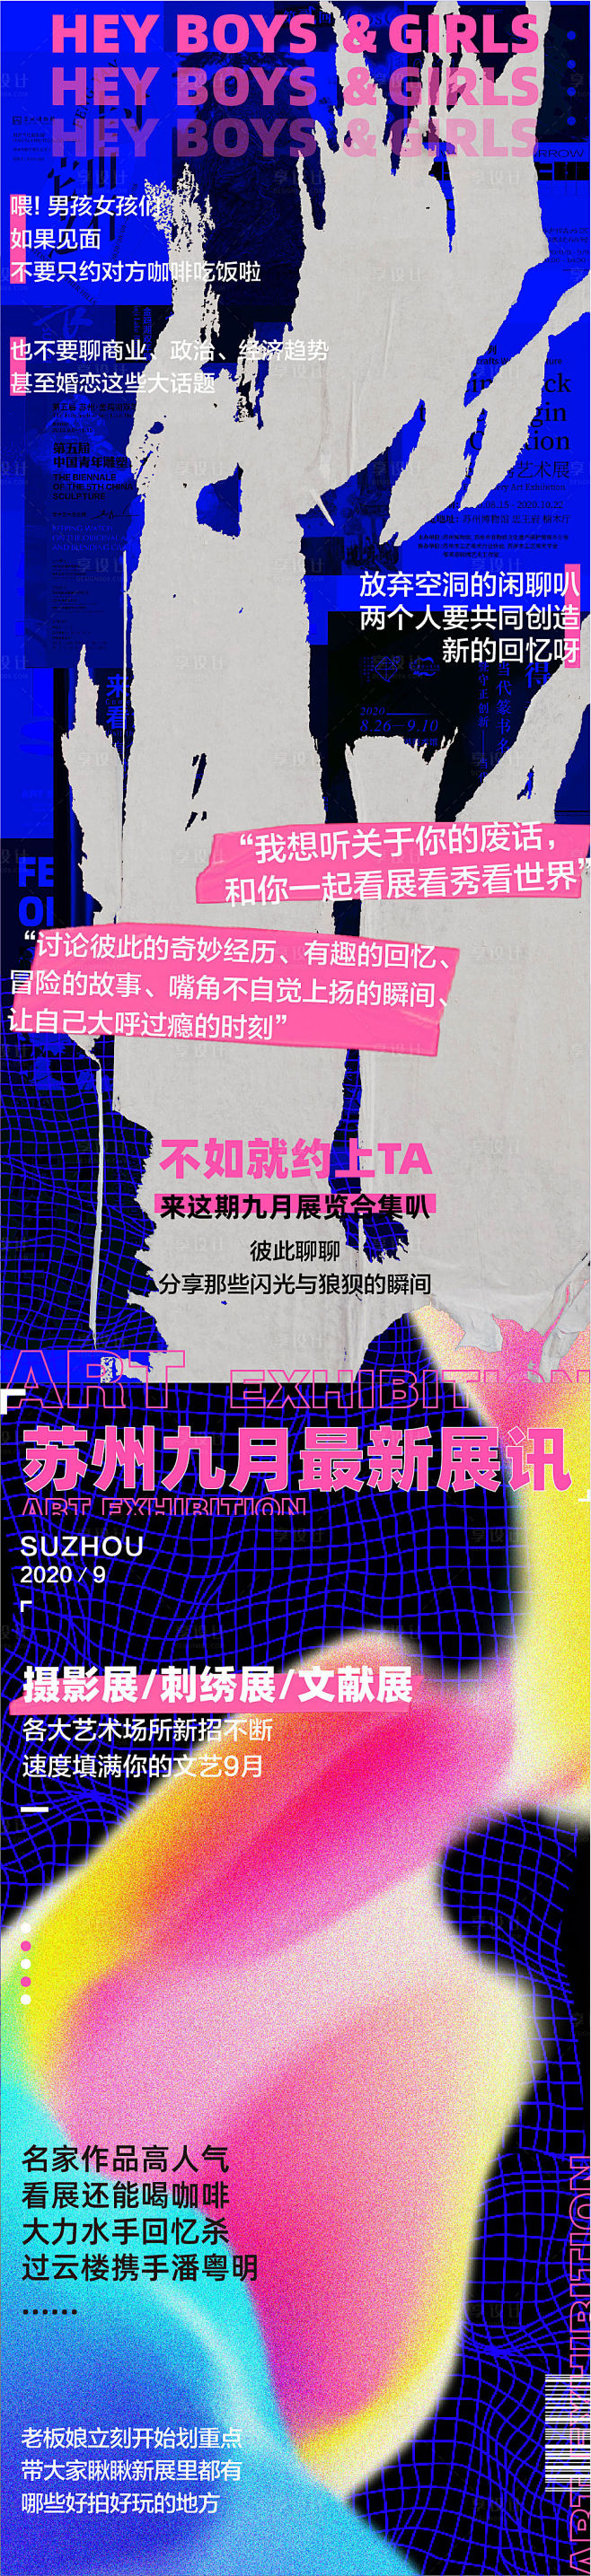 艺术节展览活动宣传海报长图-源文件